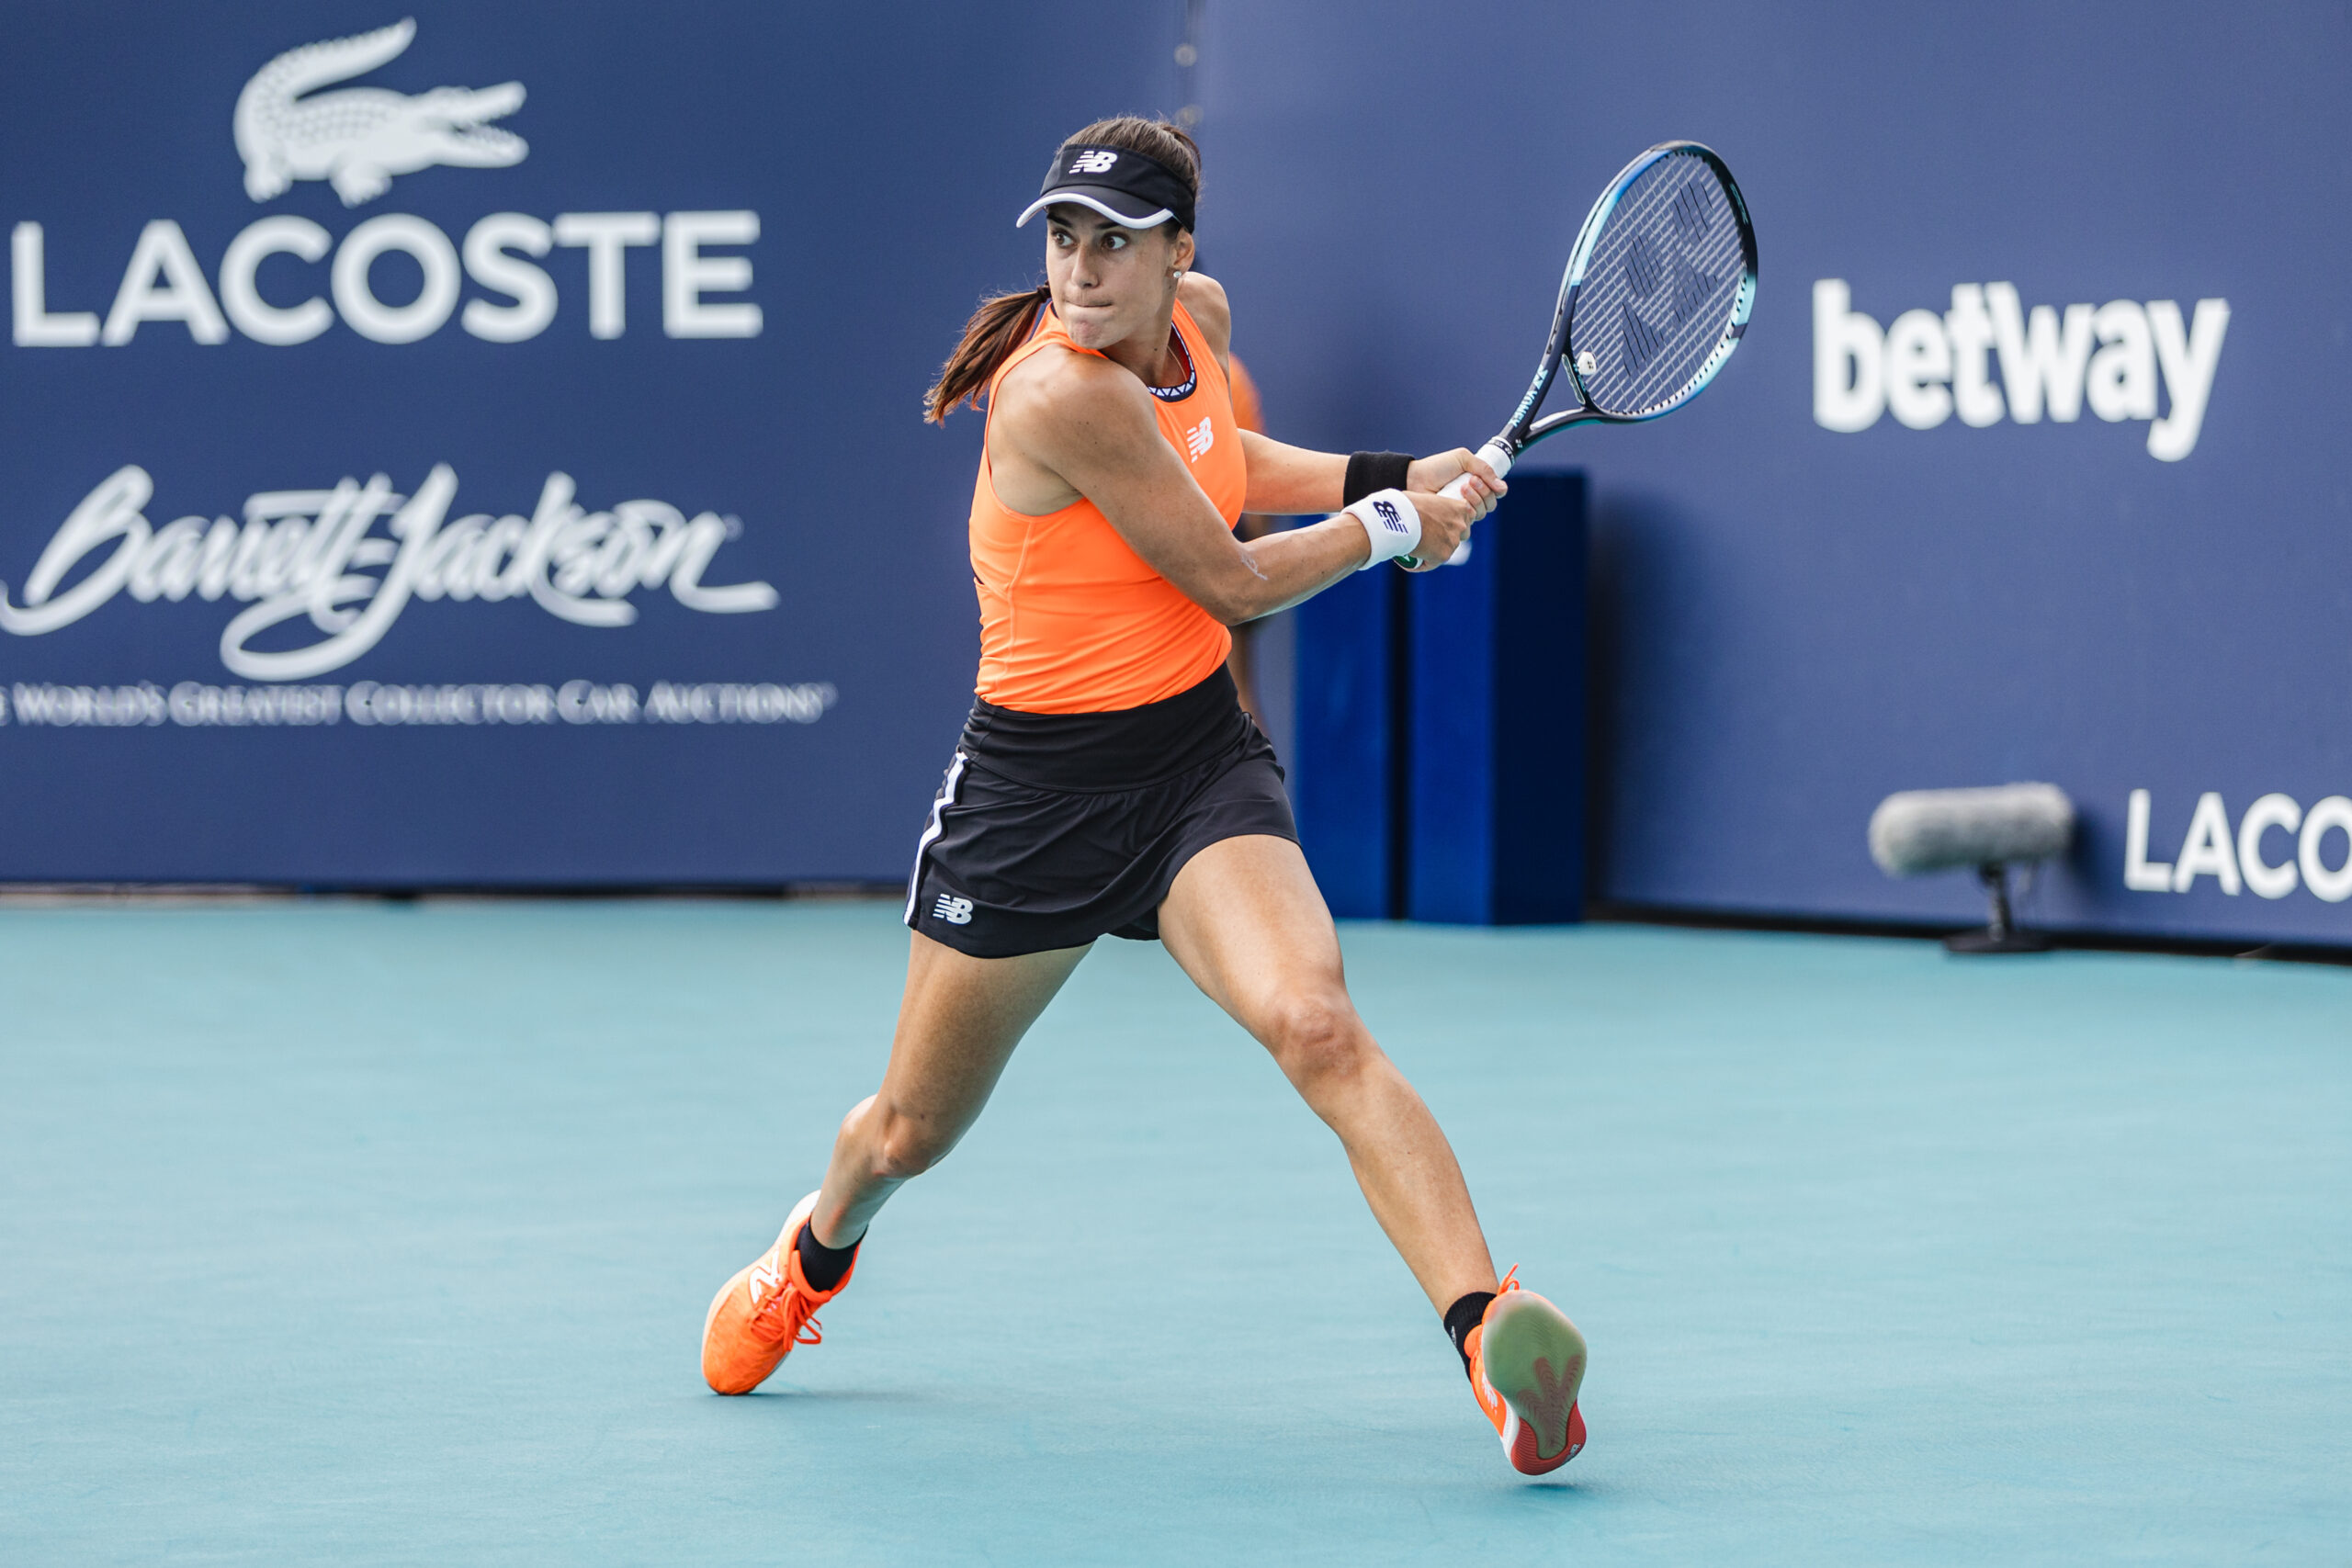 Sorana Cirstea on March 27, 2023 at the Miami Open